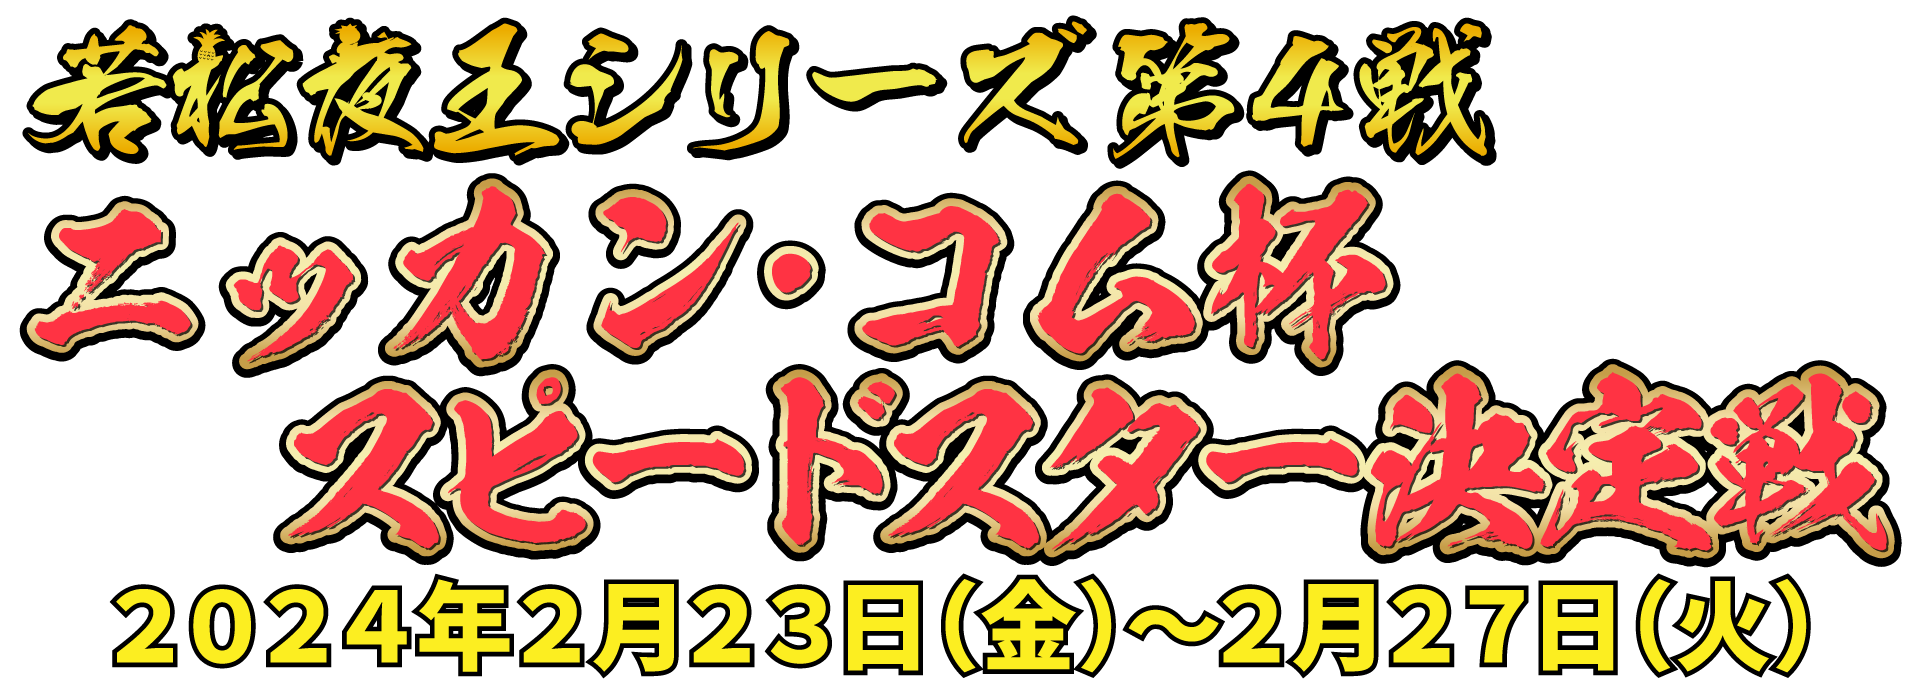 若松夜王シリーズ第4戦 ニッカン・コム杯 スピードスター決定戦 2024年2月23日(金)〜2月27日(火)